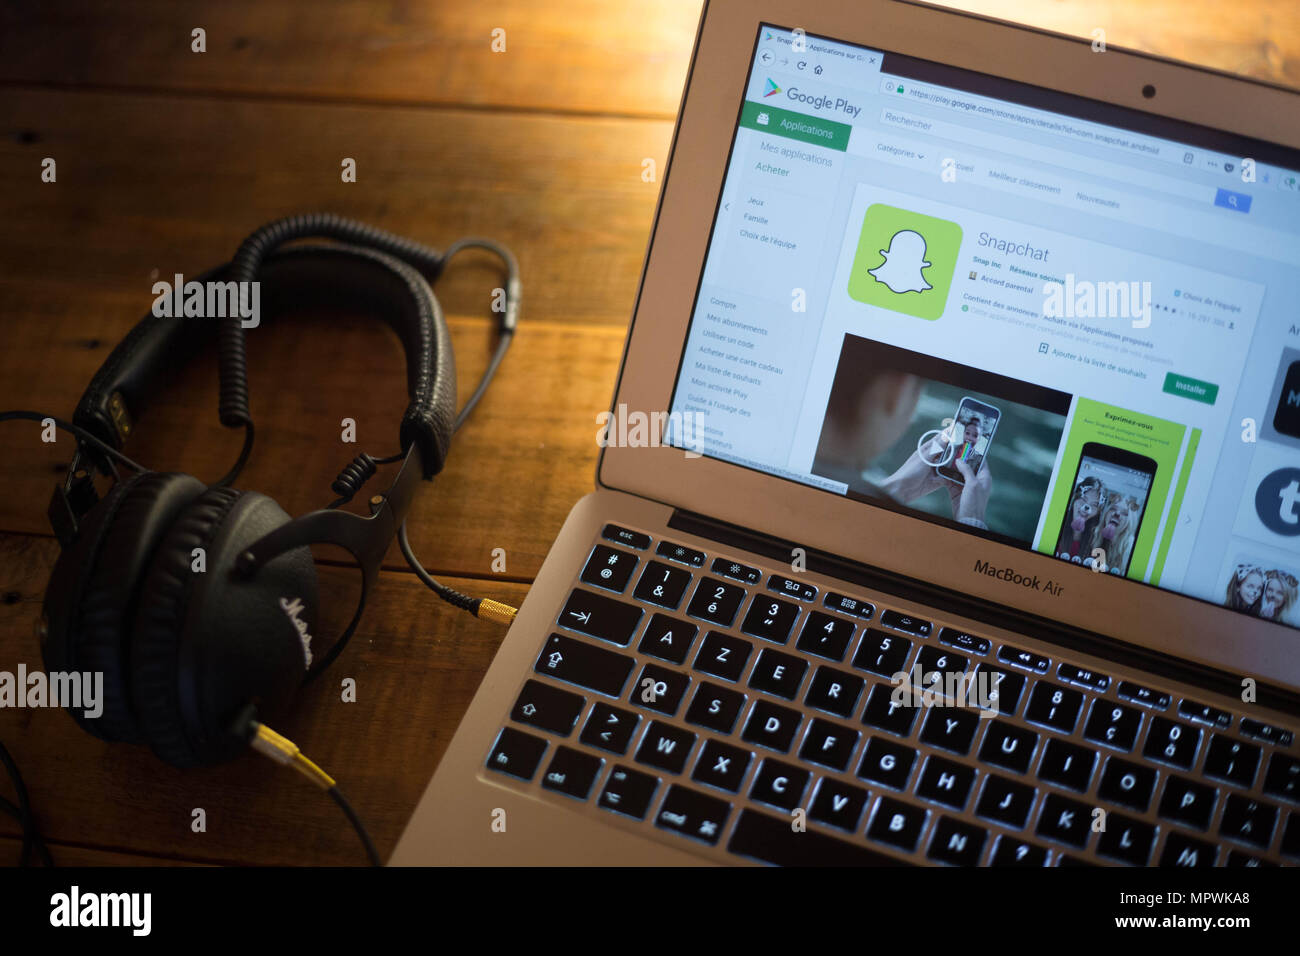 L'application Snapchat vu affichée sur un moniteur d'ordinateur Apple  MacBook Air via le Google Play Store Photo Stock - Alamy